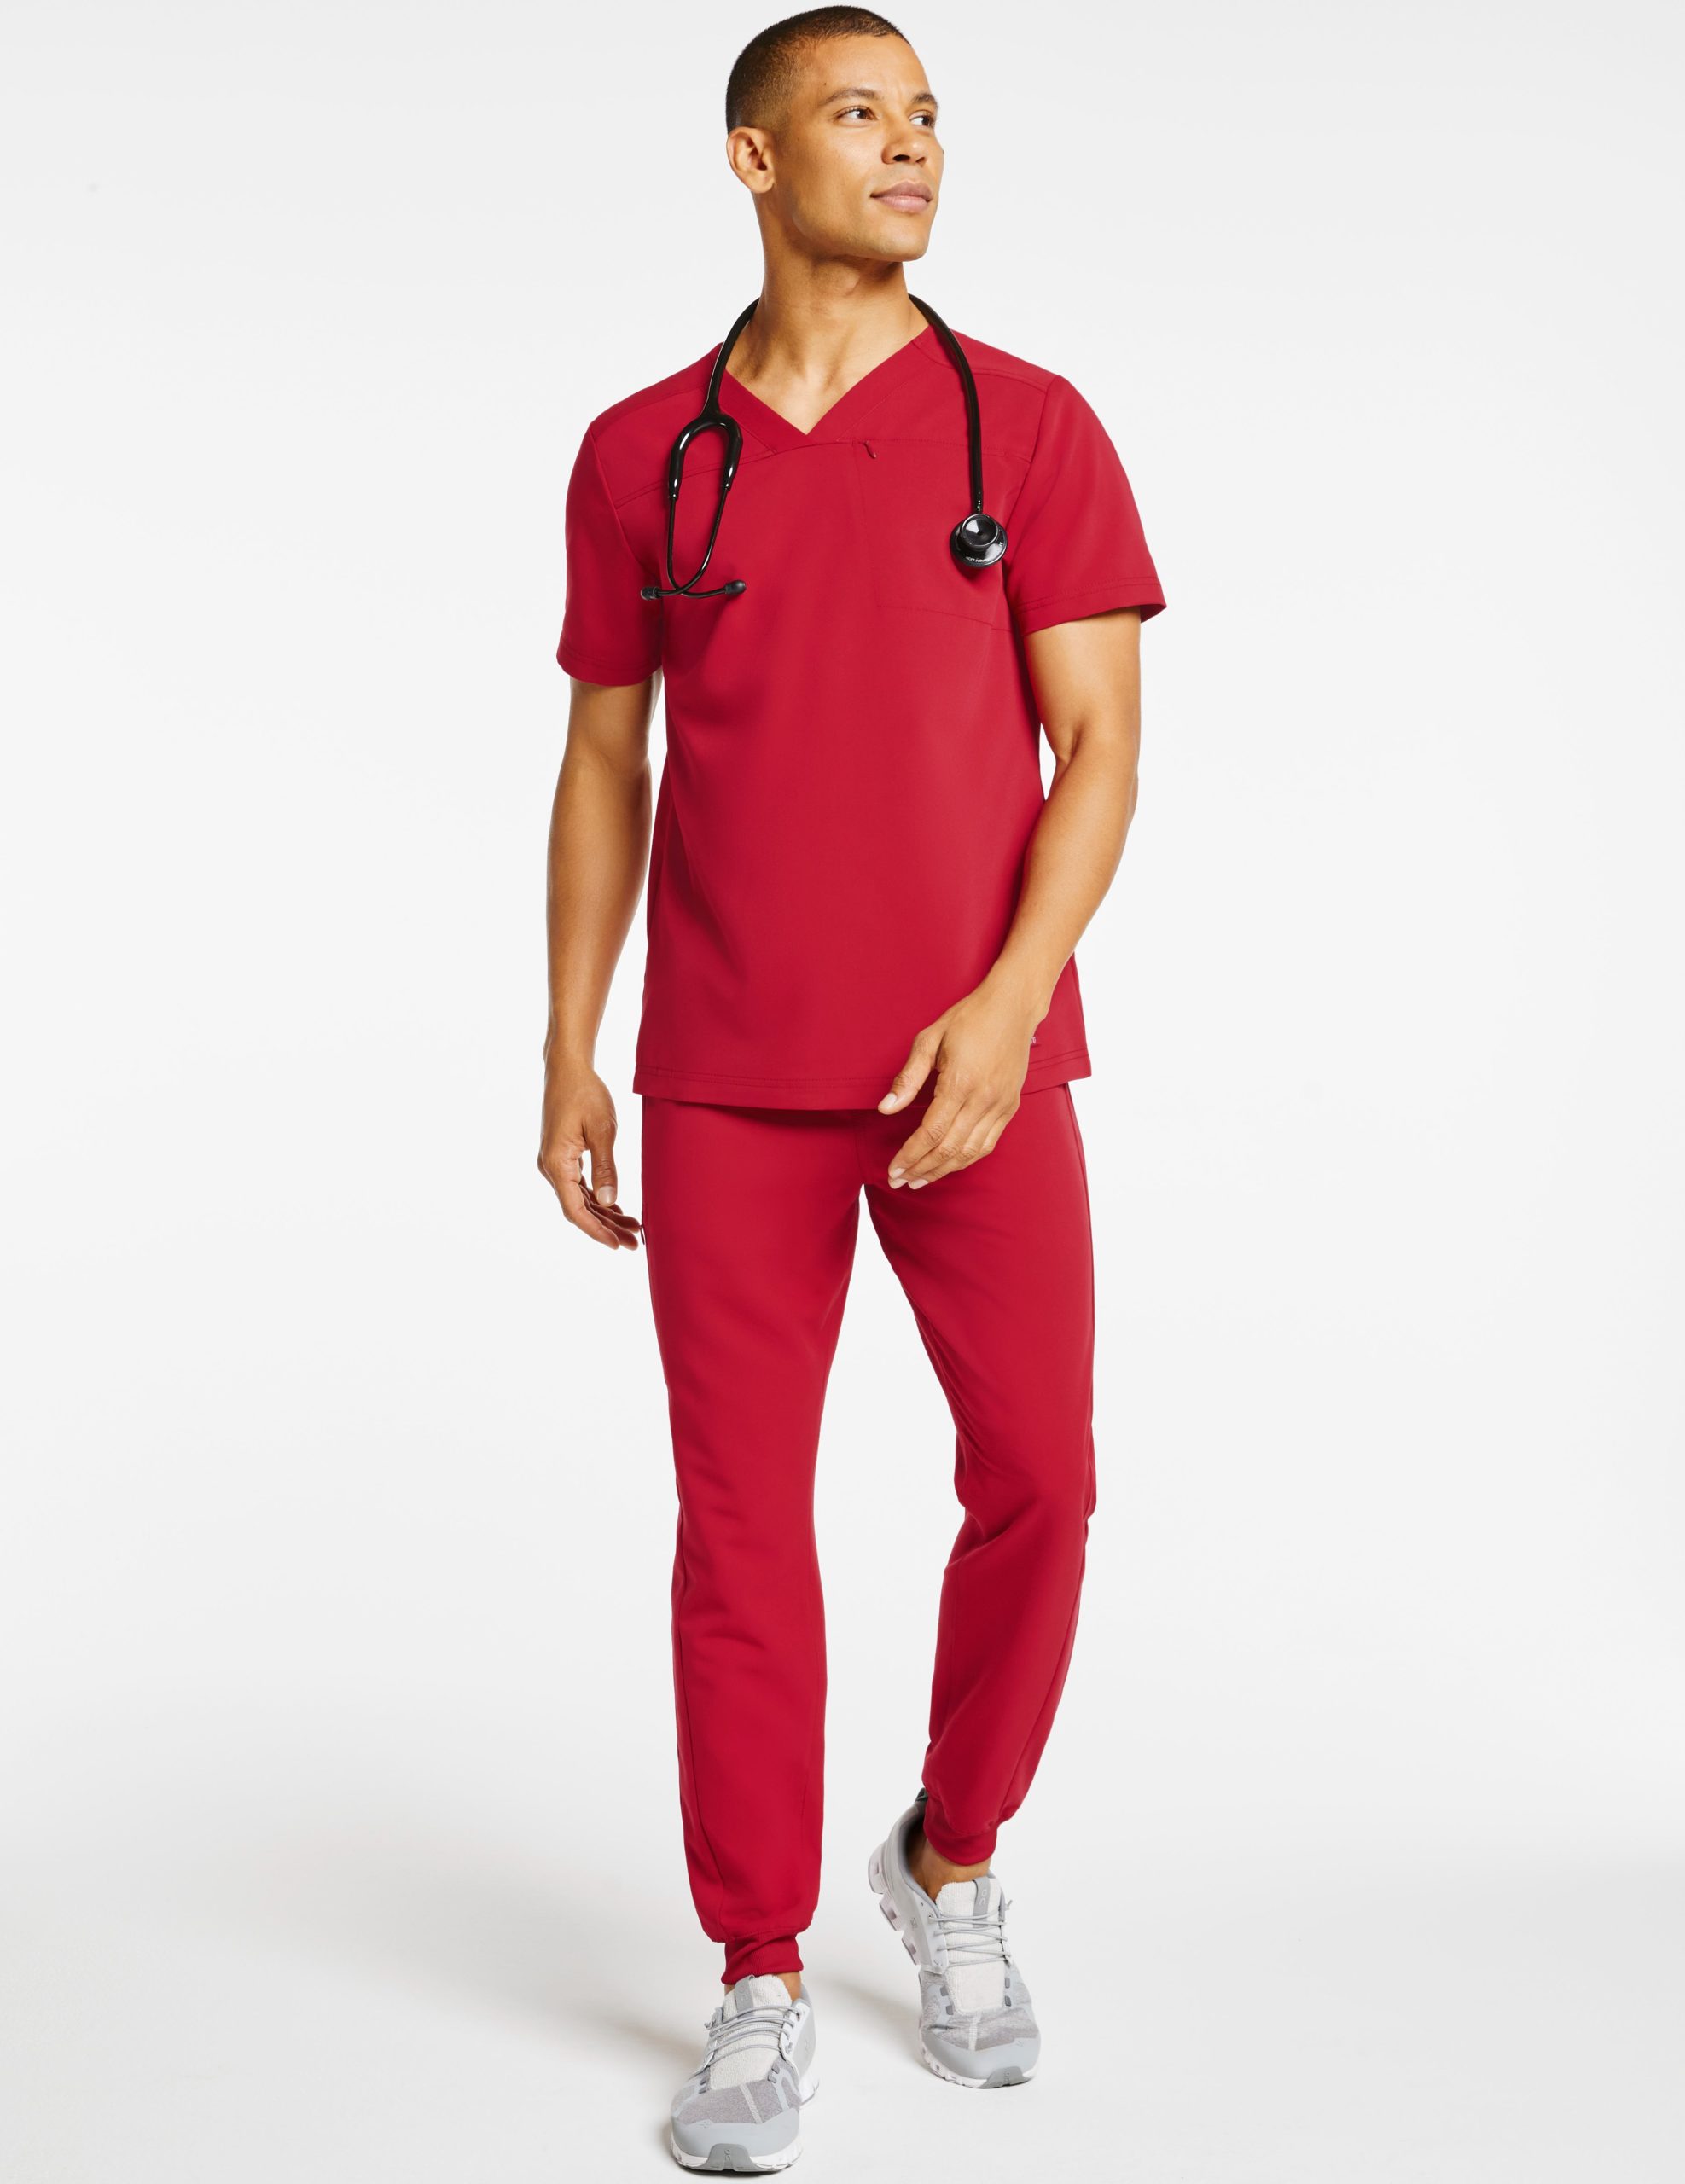 nurse wearing red jogger pants